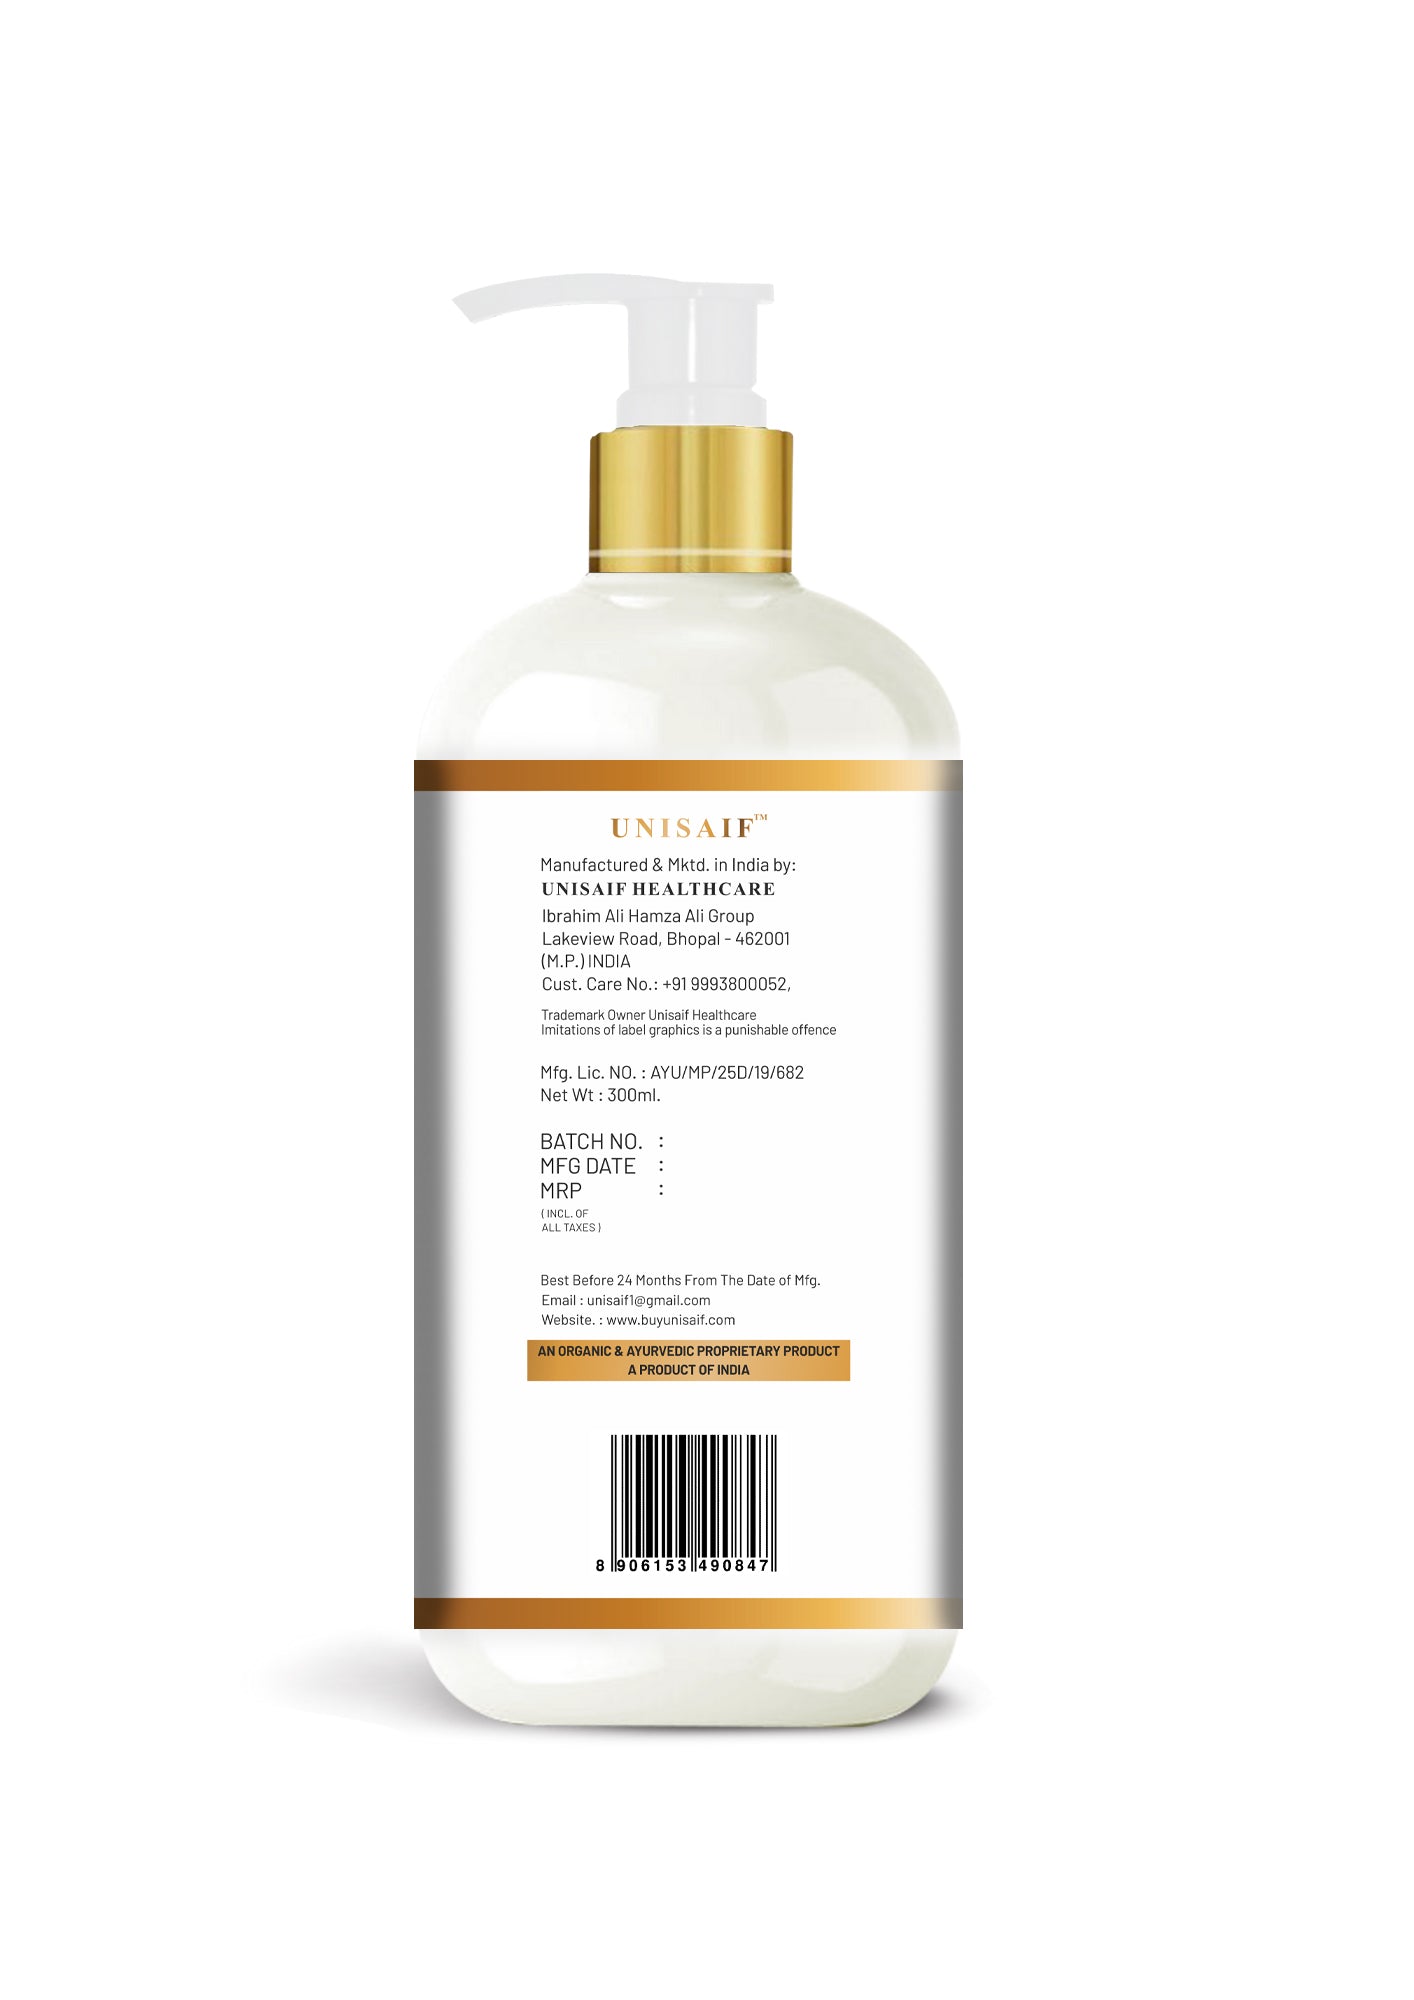 English Rose Organic Body Wash (300ml) | Sulphate & Paraben Free| Skin Friendly| Optimum PH| Nourishing